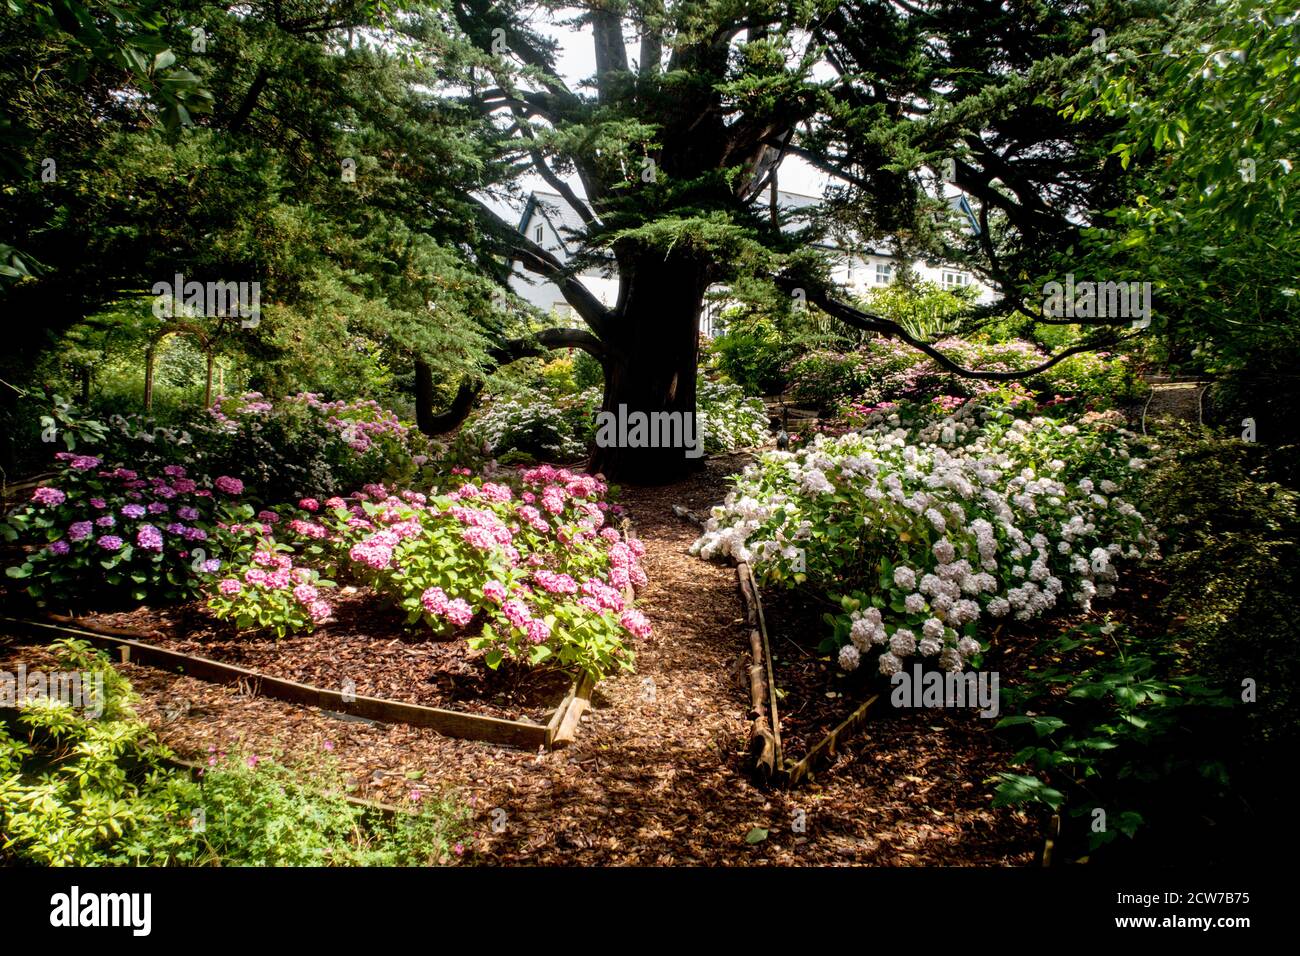 Hydrangeas grown in a shady woodland garden under a Monterey Cyprus tree in Devon. Stock Photo